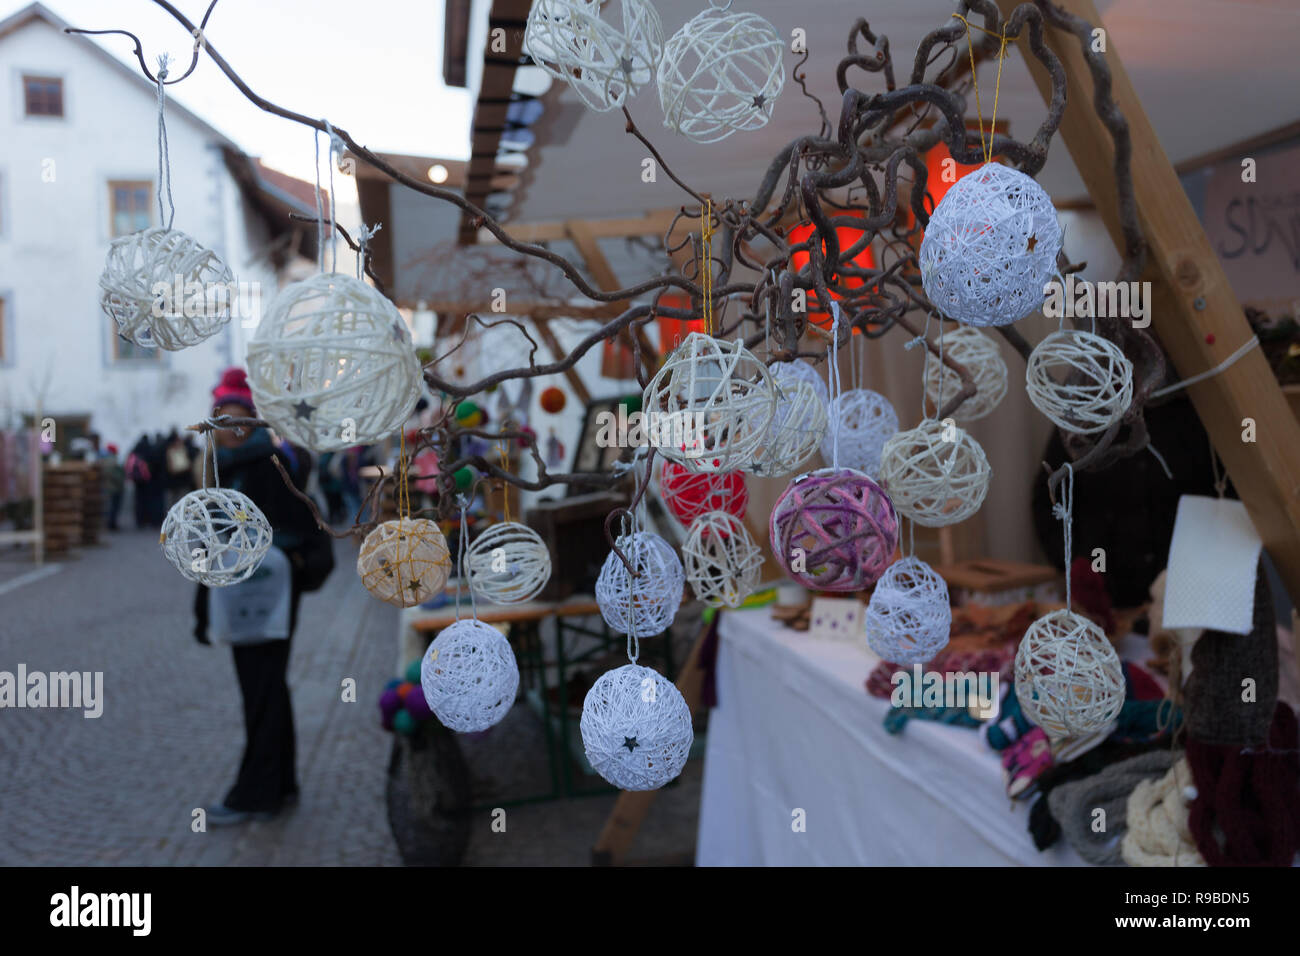 Glorenza/Glorenza, Alto Adige, Italia, 2016 - 12 10: decorazione natalizia Foto Stock